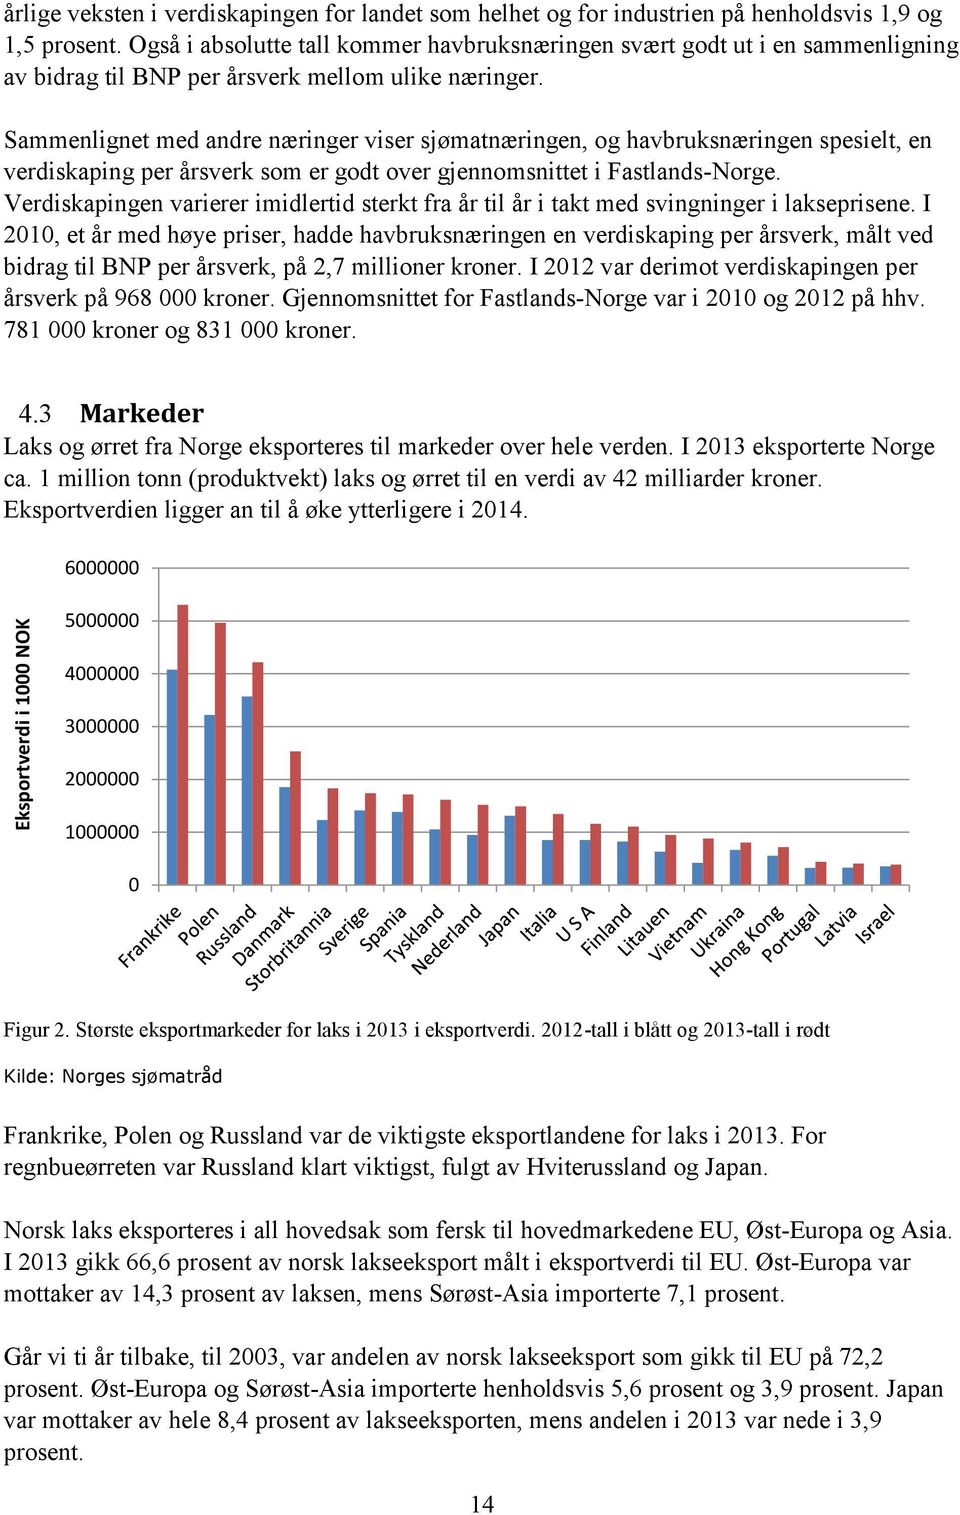 Sammenlignet med andre næringer viser sjømatnæringen, og havbruksnæringen spesielt, en verdiskaping per årsverk som er godt over gjennomsnittet i Fastlands-Norge.